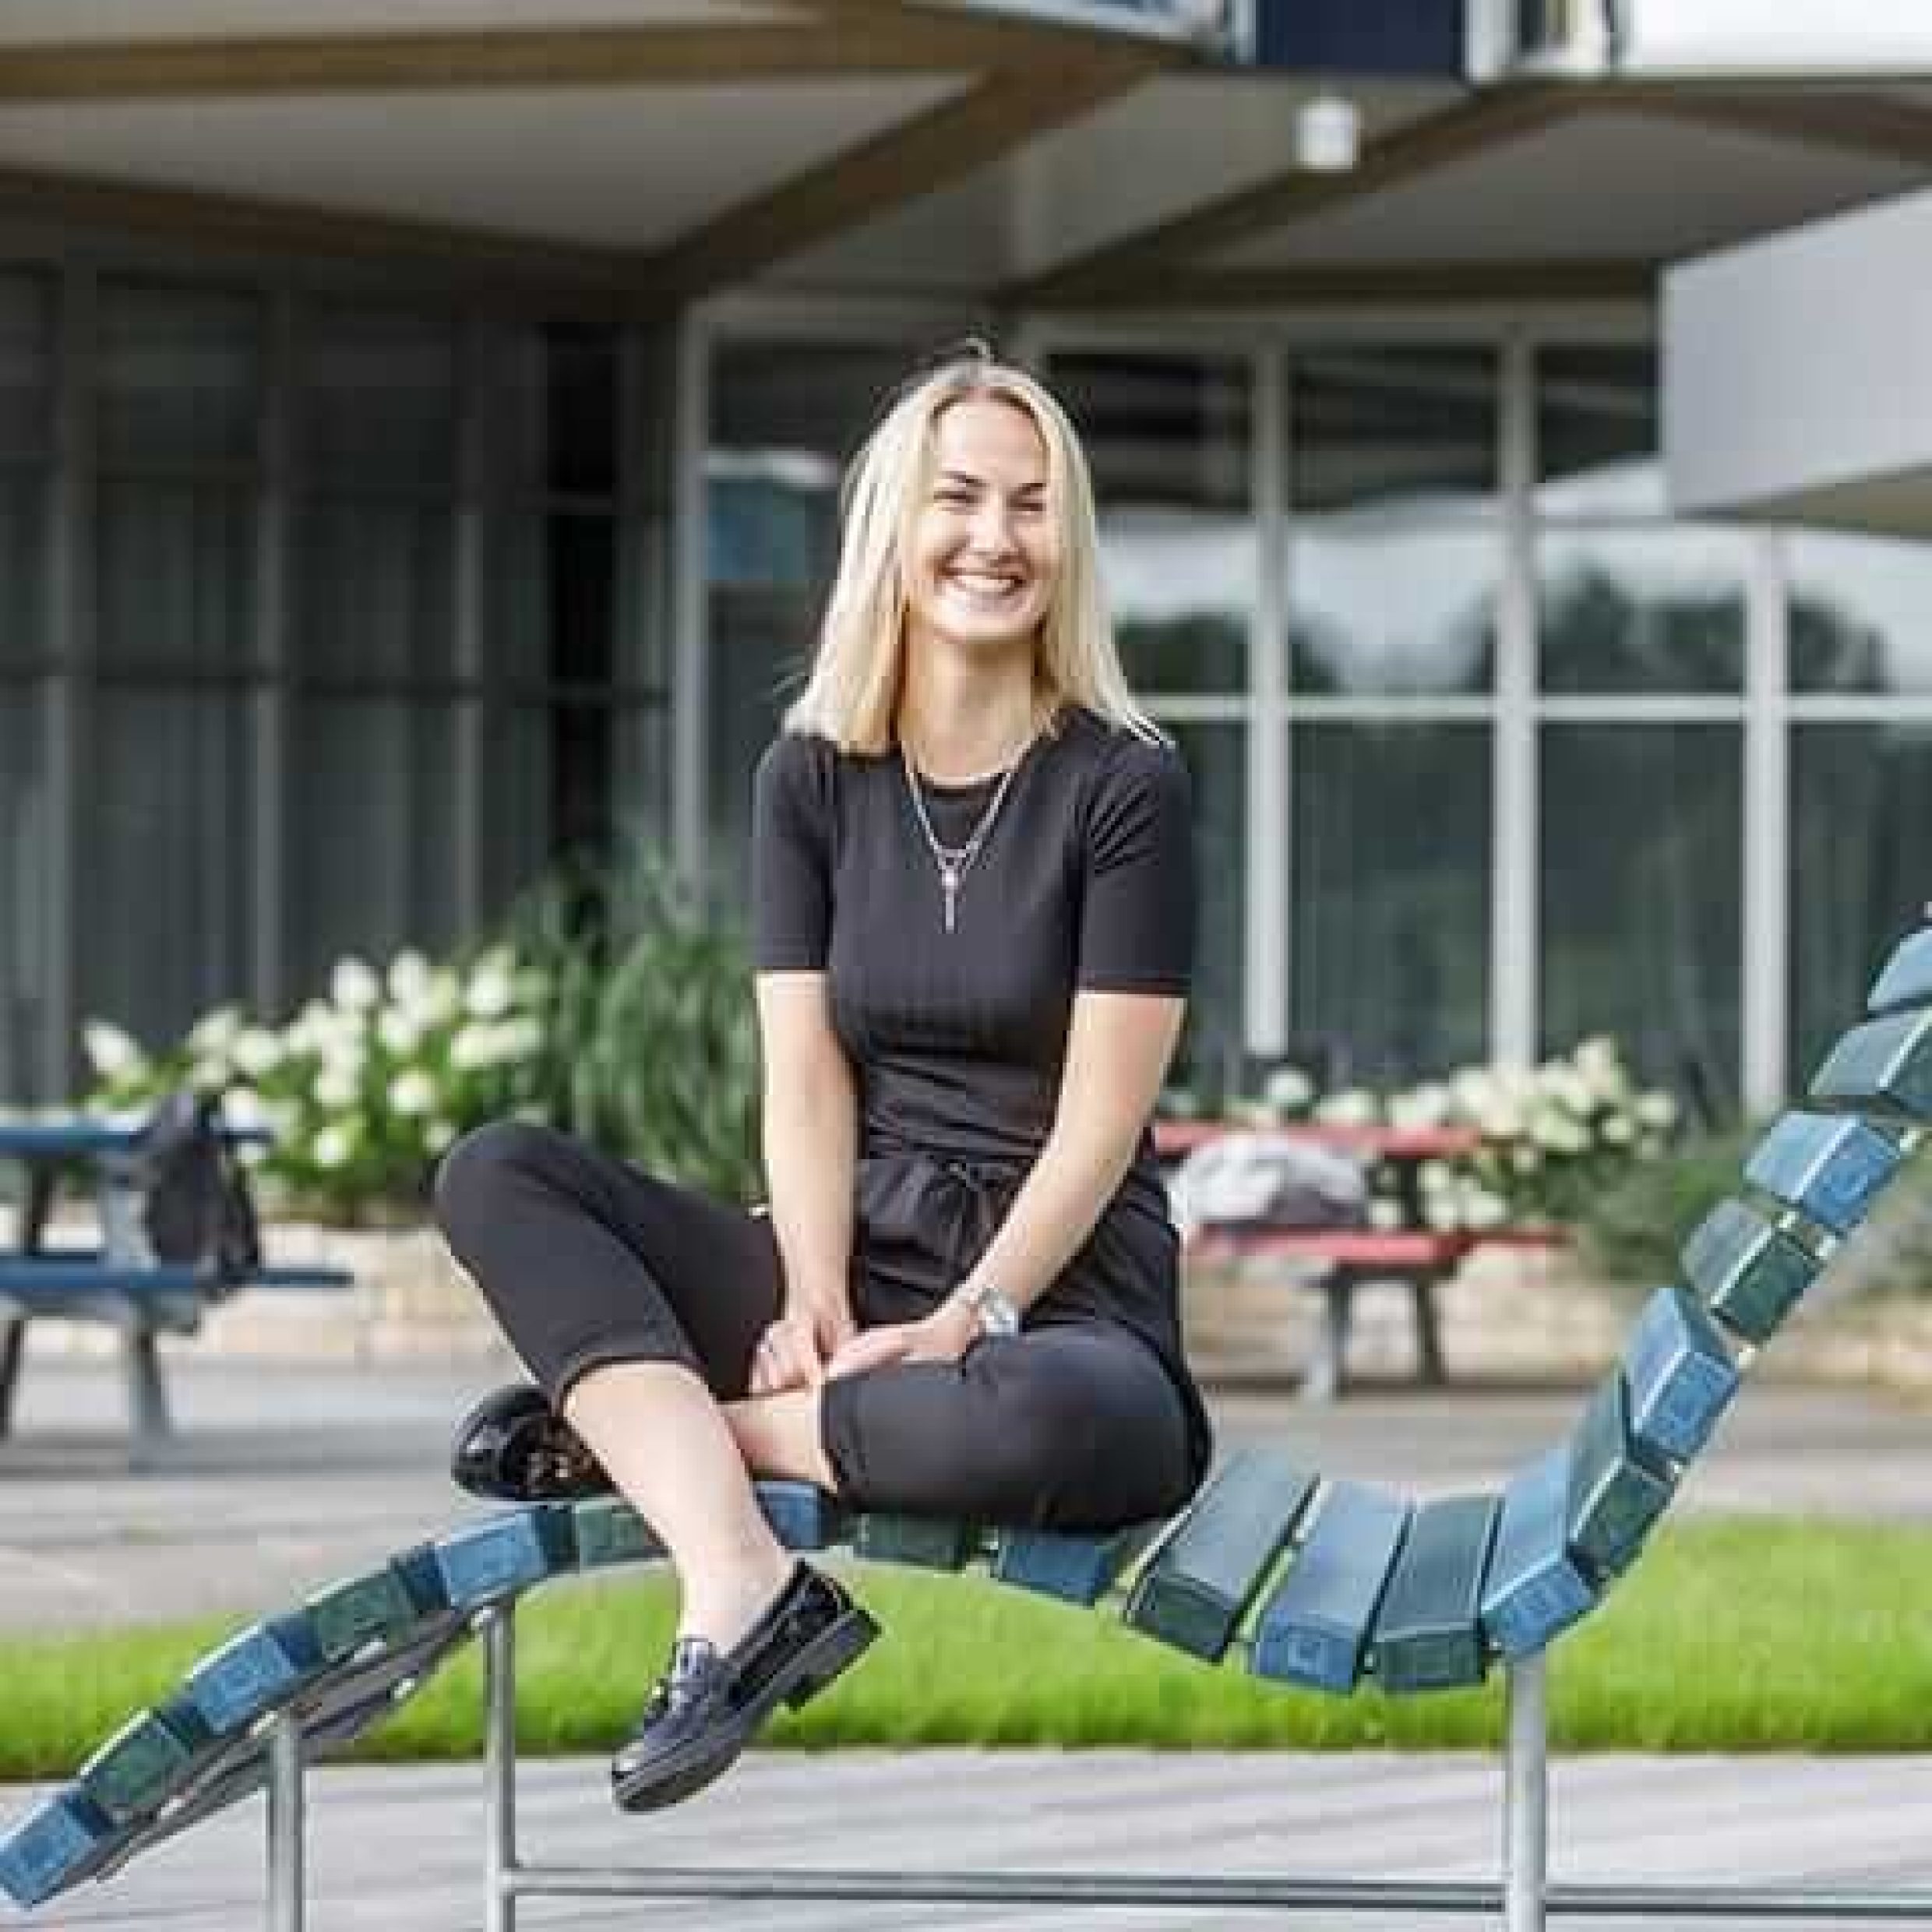 Humans of Responsibility: Svenja Schroeder sitzt auf einer Liege und lacht